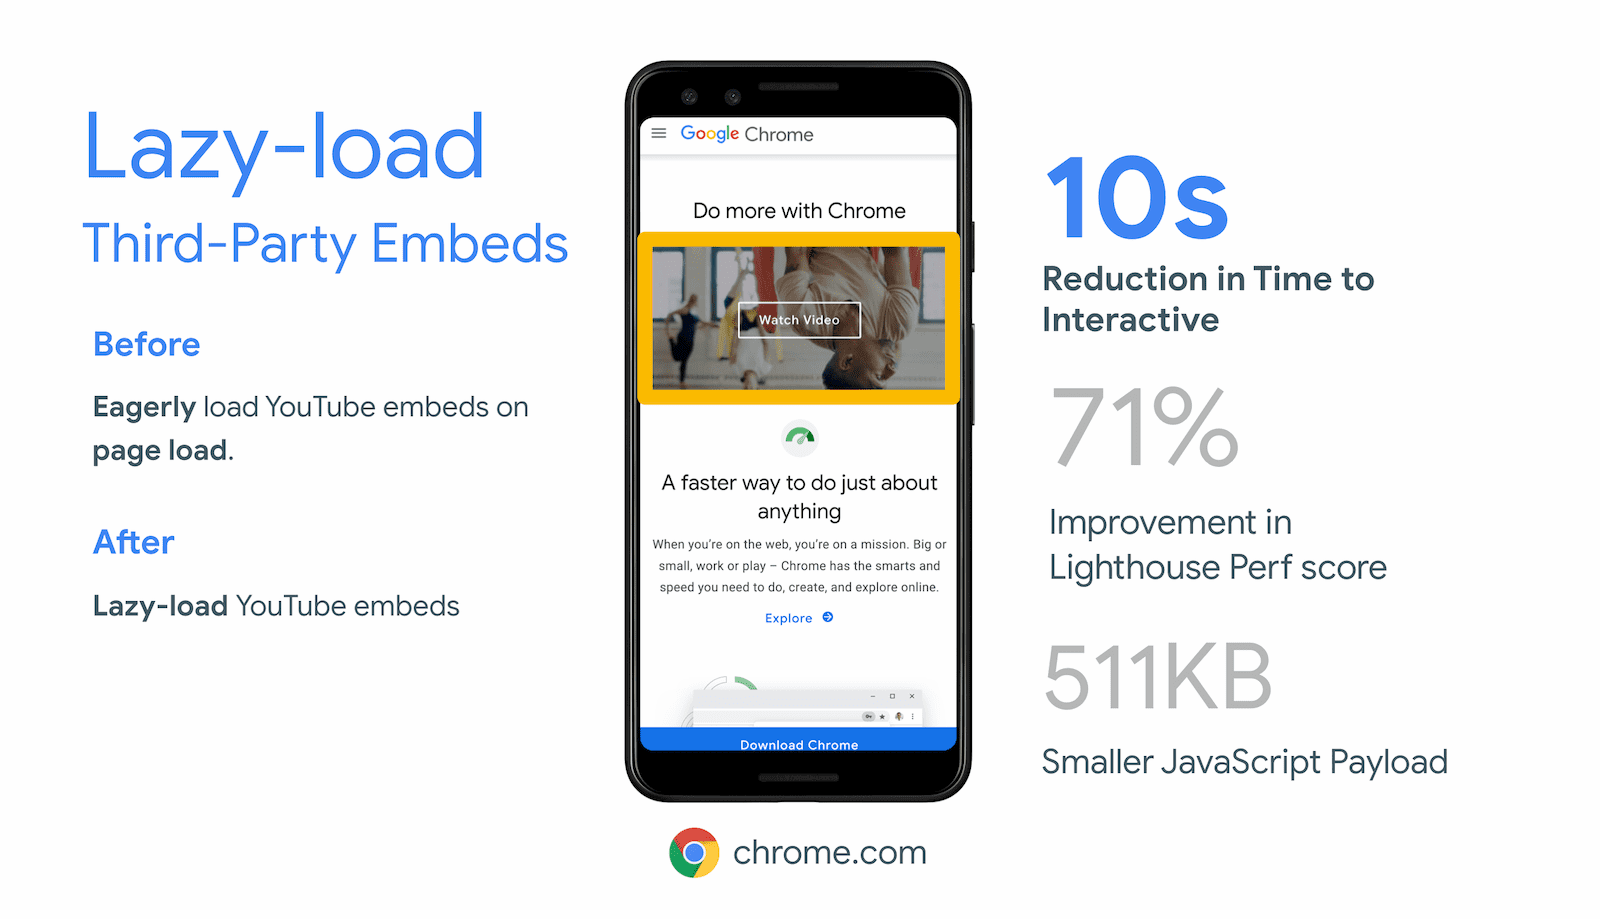 Chrome.com ने अपने YouTube वीडियो एम्बेड के लिए लेज़ी-लोडिंग वाले ऑफ़स्क्रीन iframe की मदद से, Time To Interactive में 10 सेकंड की कमी की